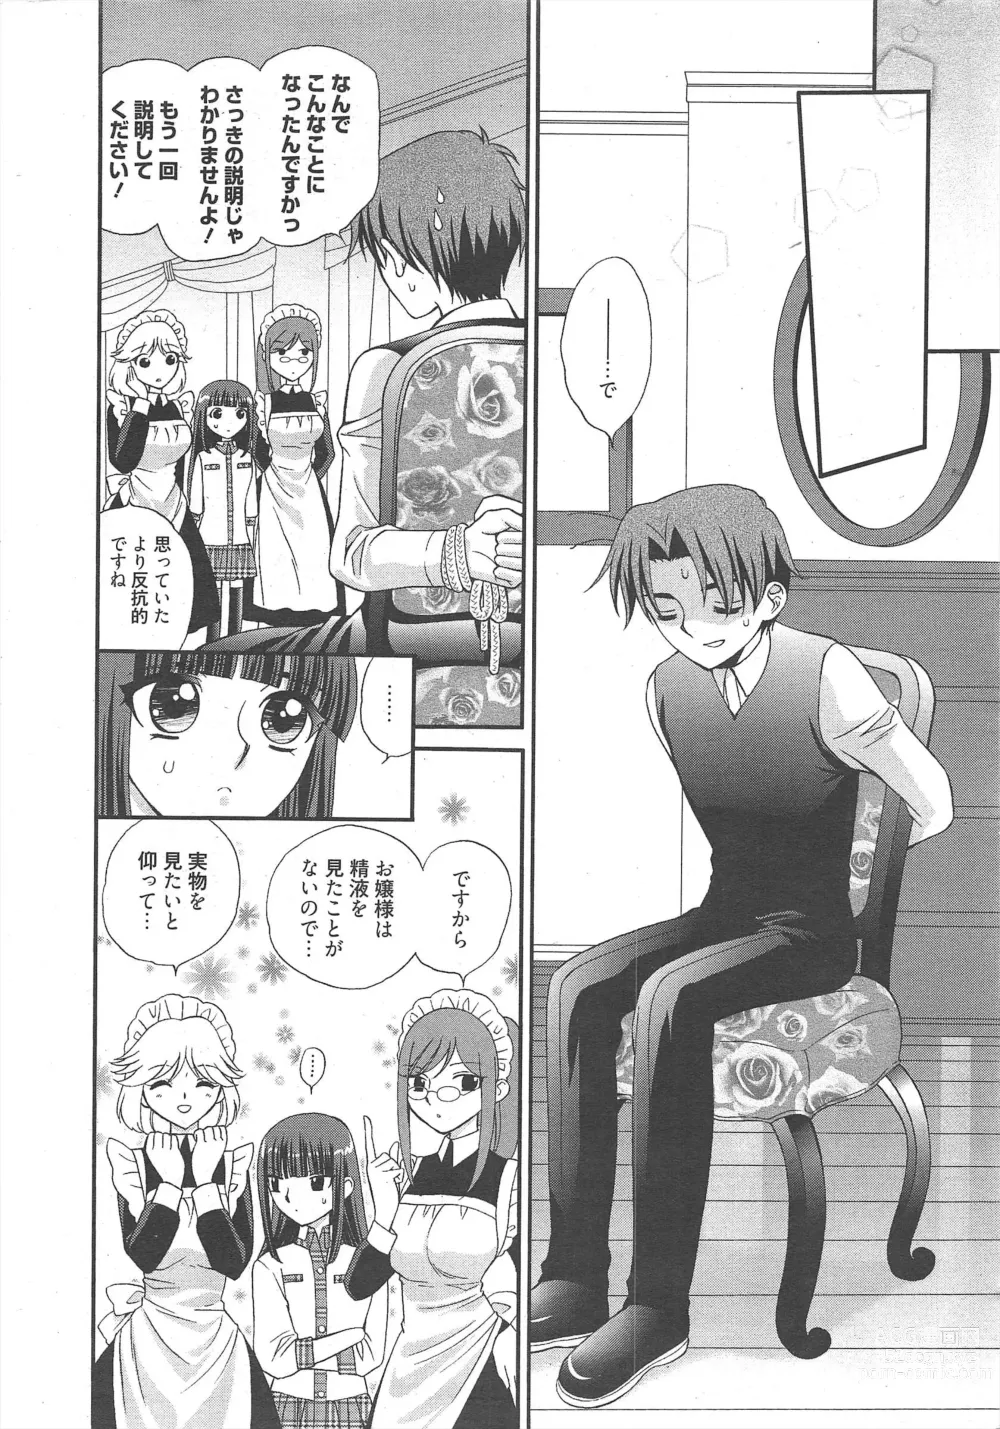 Page 12 of manga Manga Bangaichi 2012-06